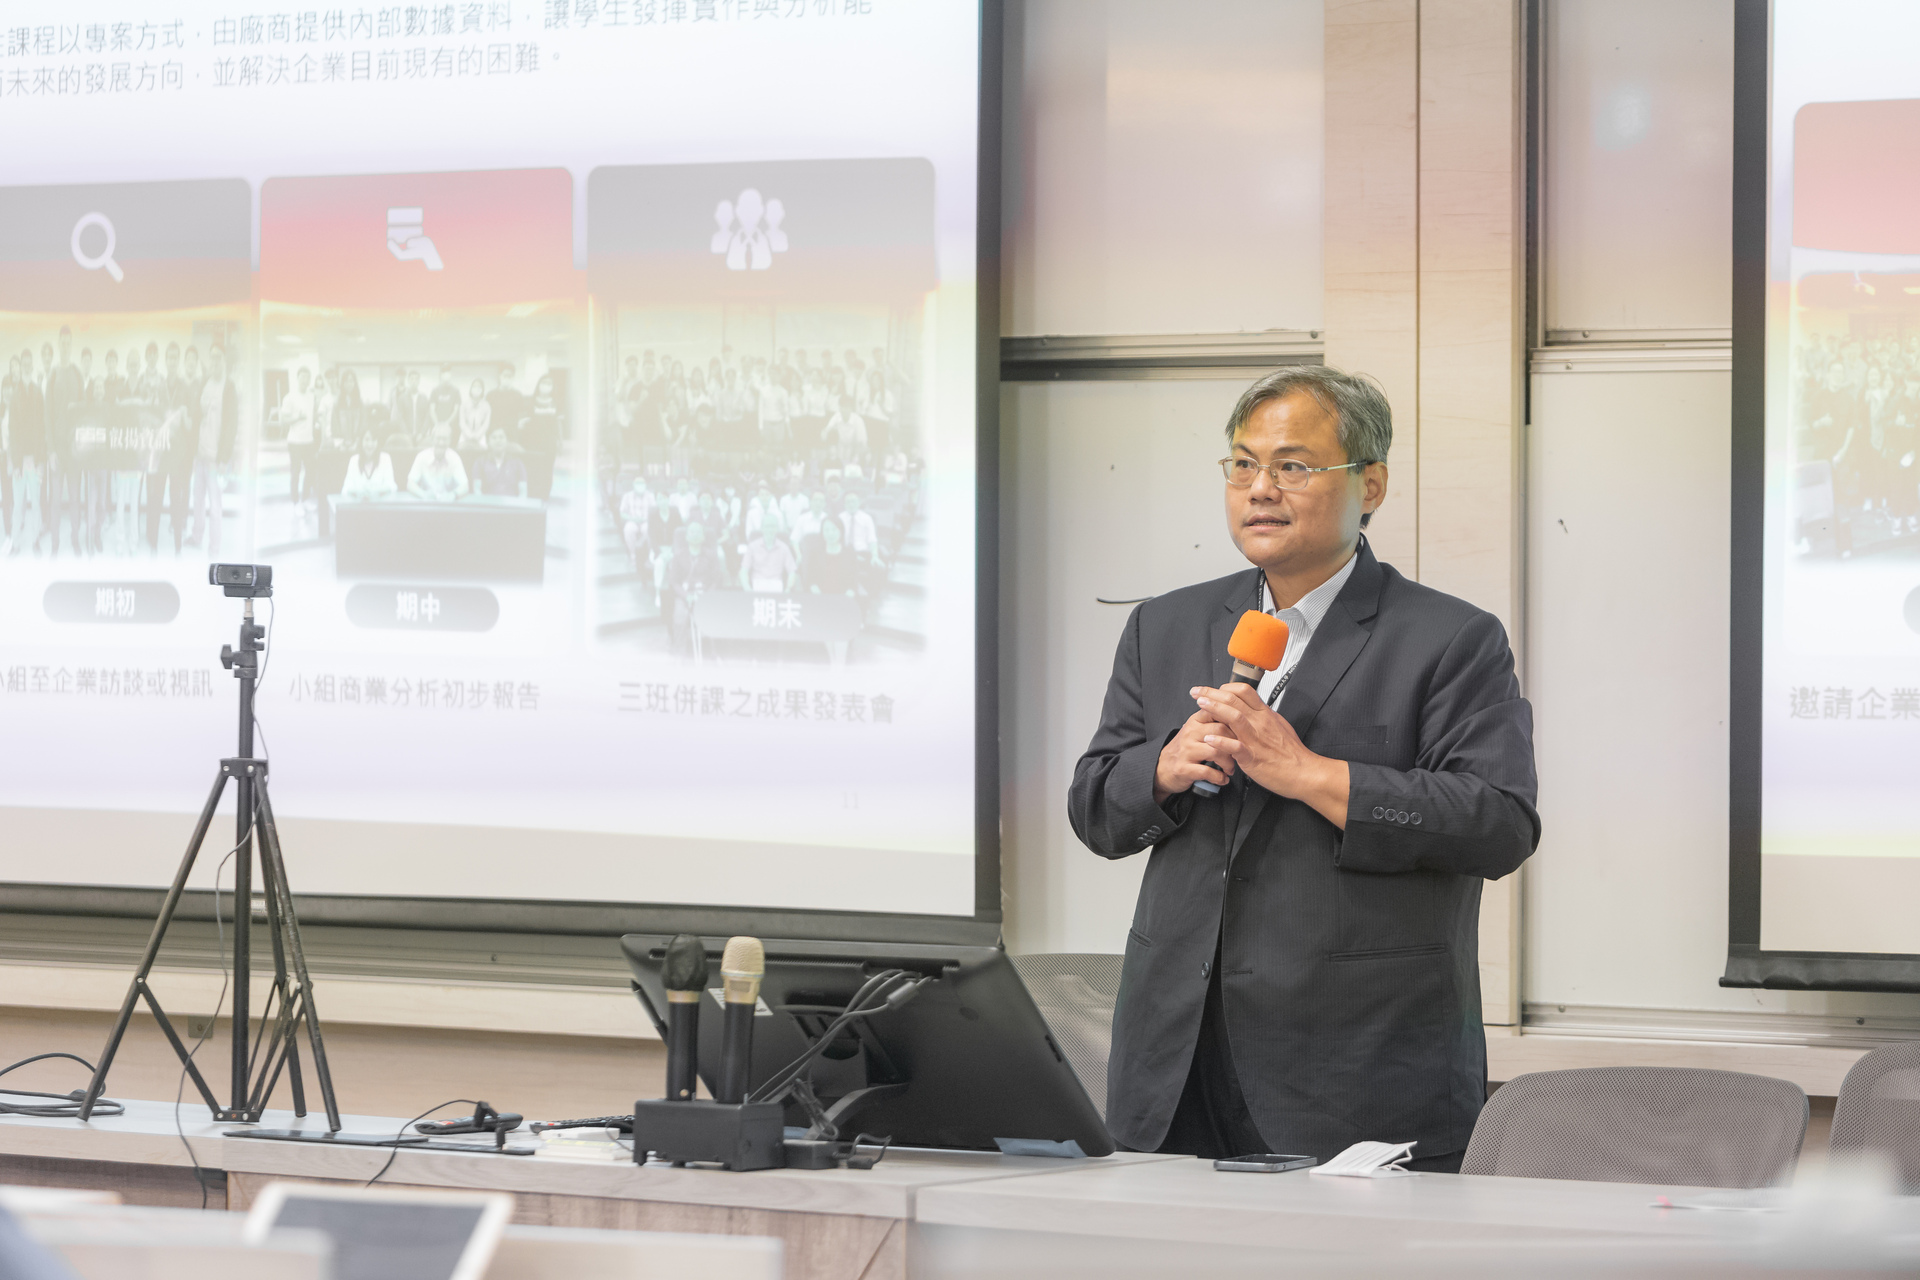 Professor Chou-wen Wang’s course explanation